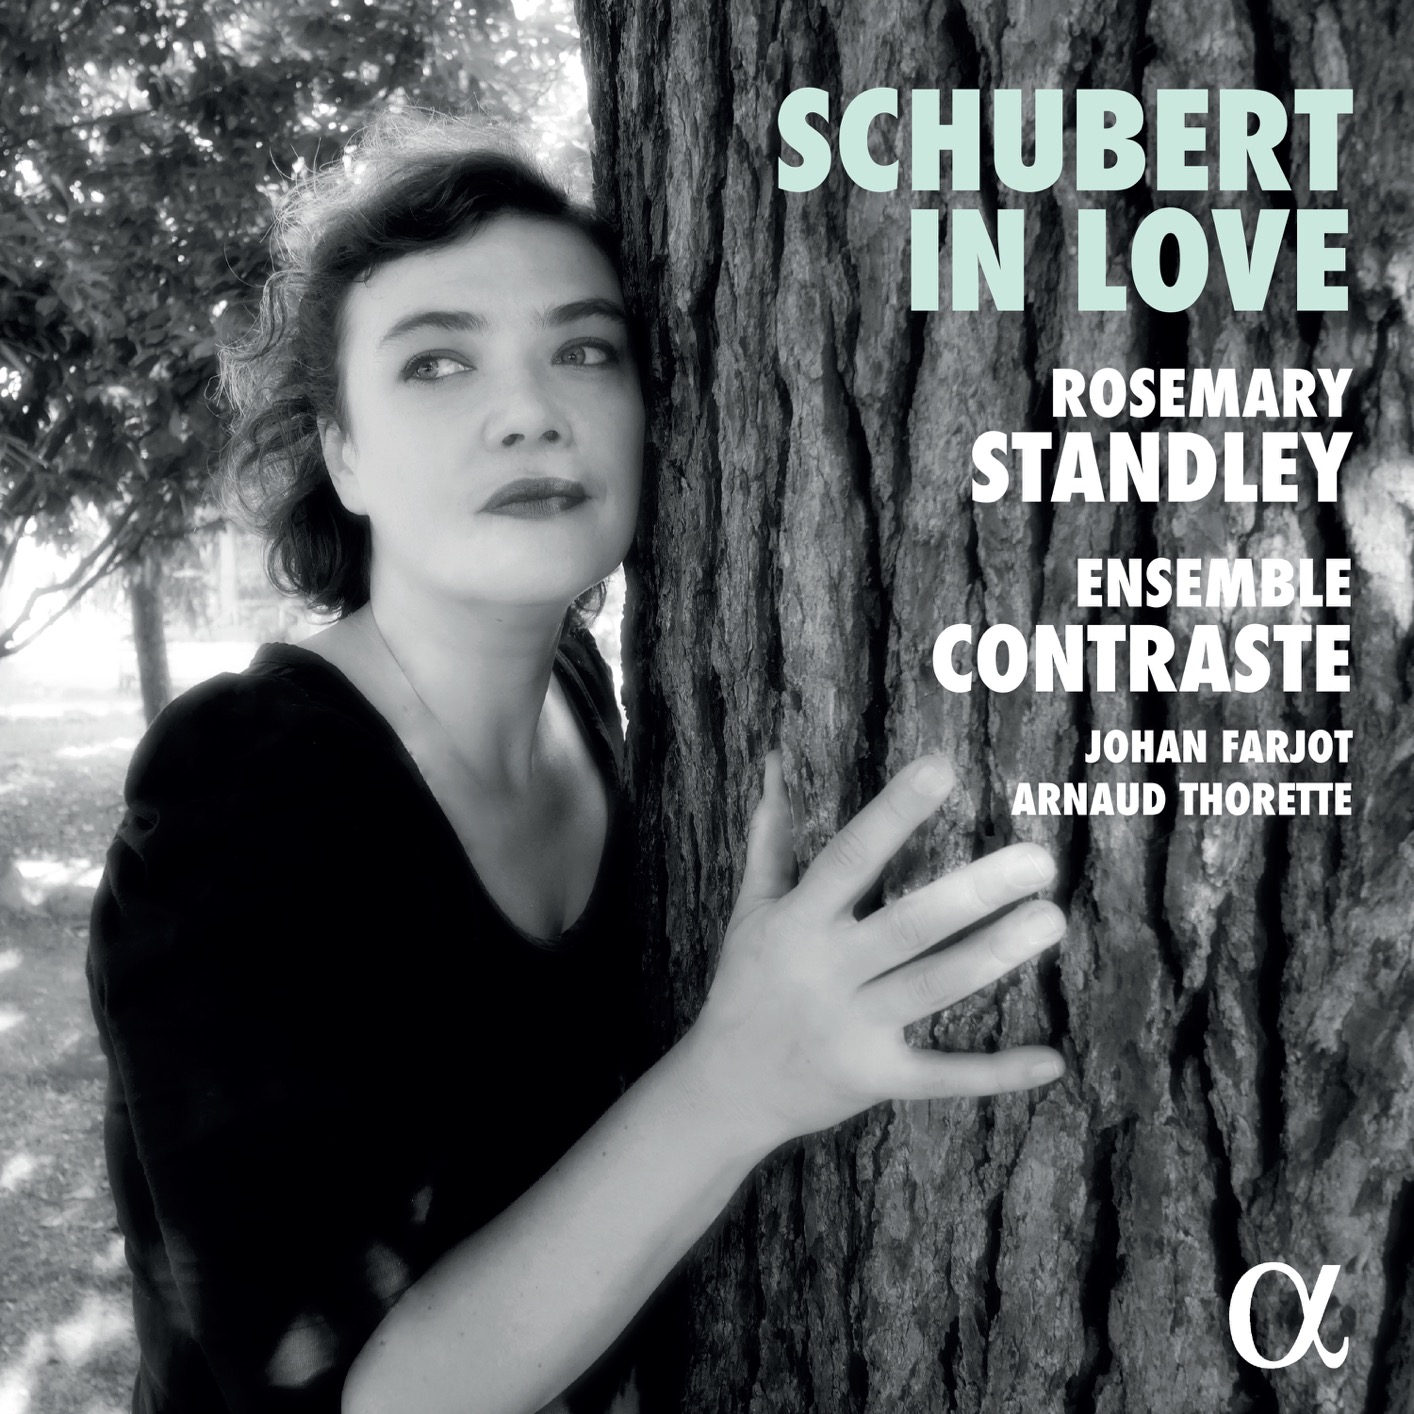 Rosemary Standley, Ensemble Contraste, Johan Farjot, Arnaud Thorette - Schubert in Love (2020) [FLAC 24bit/96kHz]